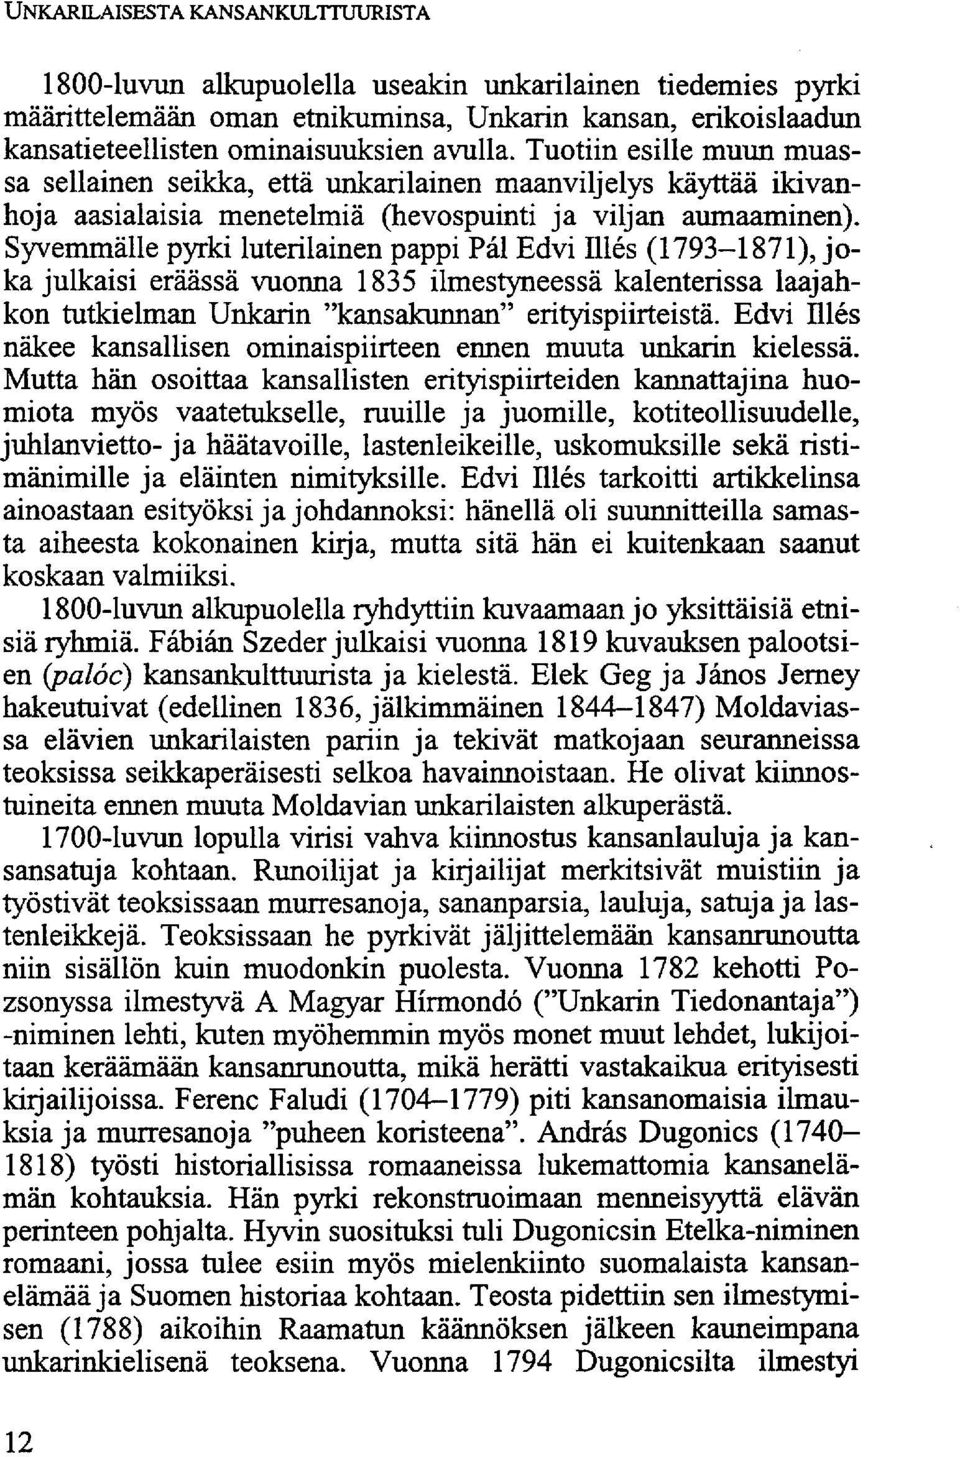 Syvemmälle pyrki luterilainen pappi Pál Edvi Illés (1793-1871), joka julkaisi eräässä vuonna 1835 ilmestyneessä kalenterissa laajahkon tutkielman Unkarin "kansakunnan" erityispiirteistä.